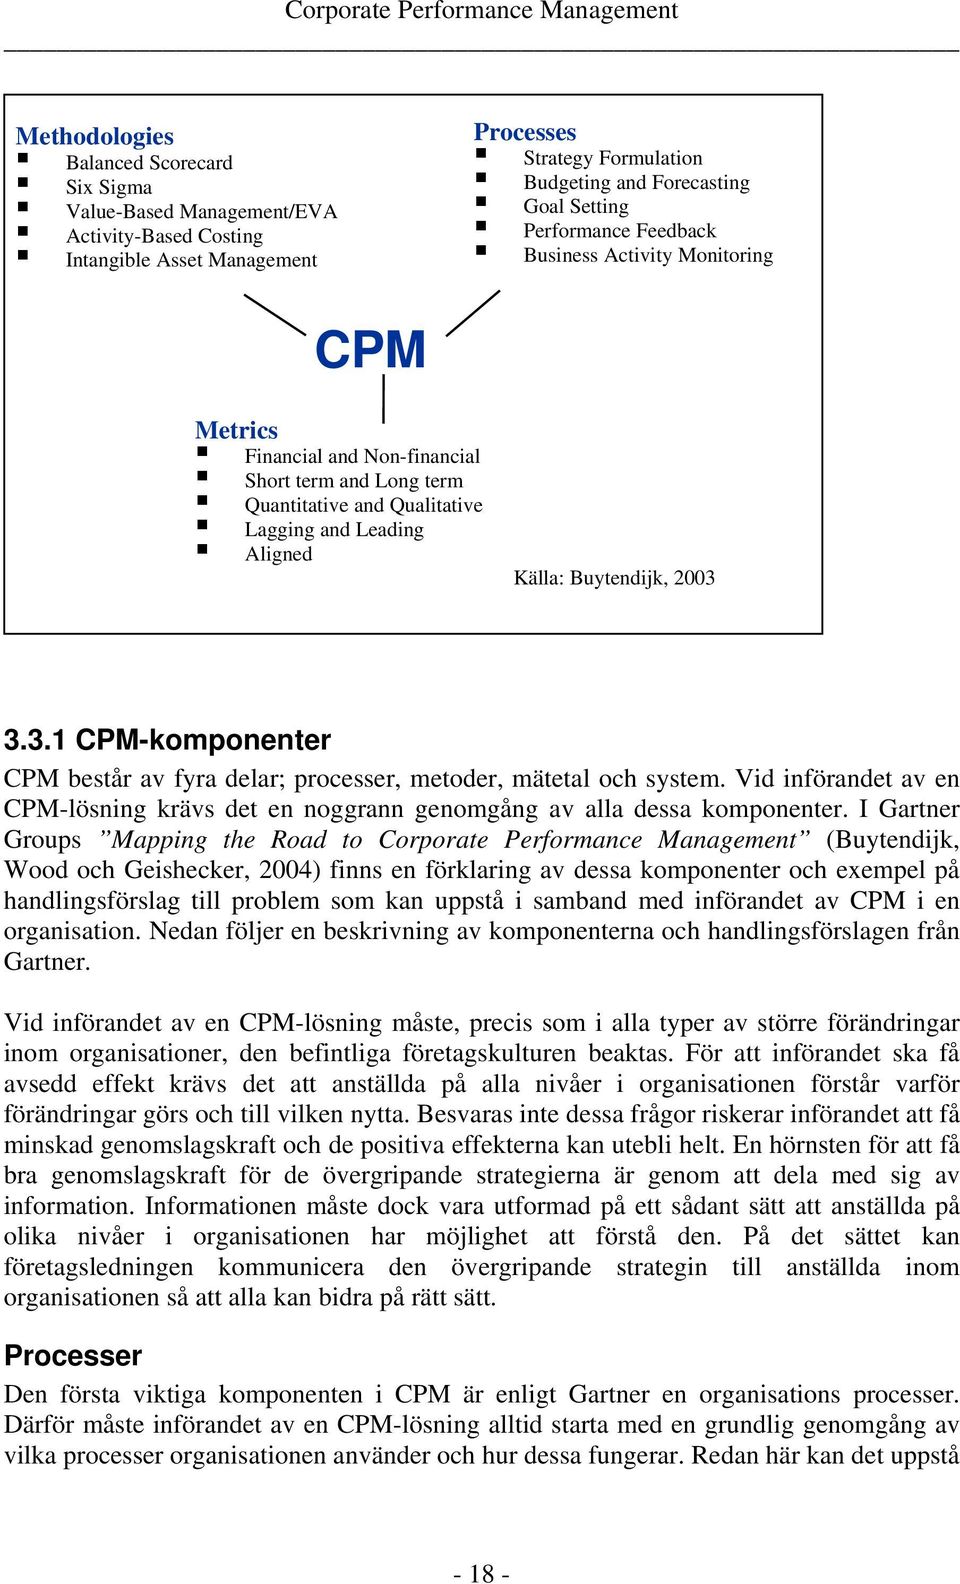 3.3.1 CPM-komponenter CPM består av fyra delar; processer, metoder, mätetal och system. Vid införandet av en CPM-lösning krävs det en noggrann genomgång av alla dessa komponenter.